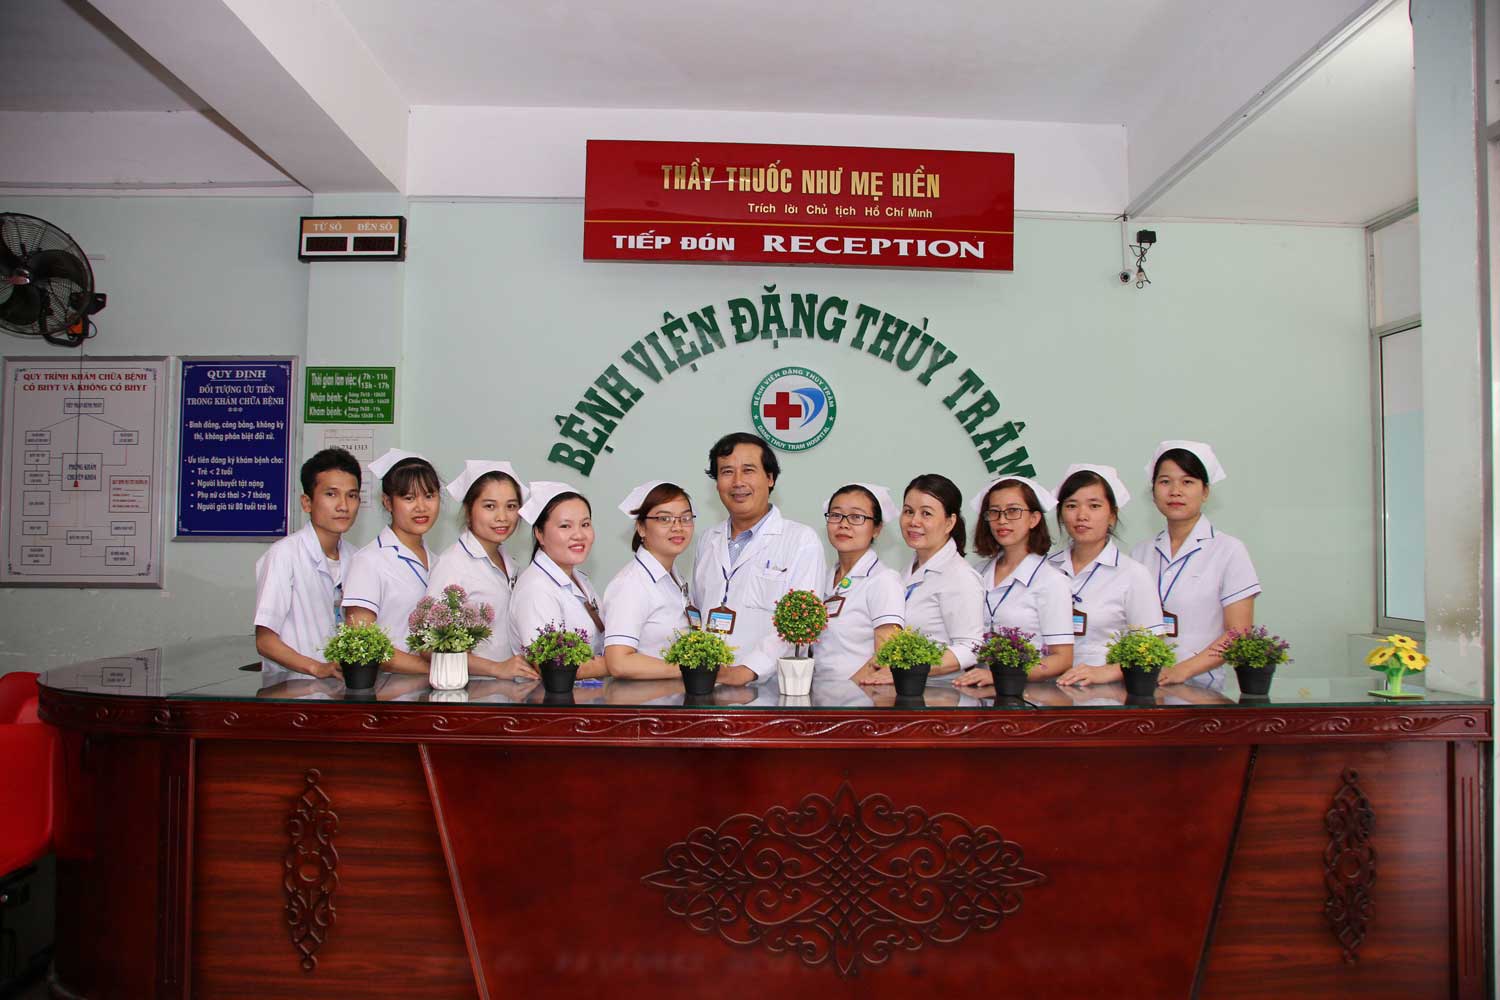 Lãnh đạo tỉnh Quảng Ngãi ủng hộ hàng trăm y bác sĩ nhận hỗ trợ phụ cấp nghề